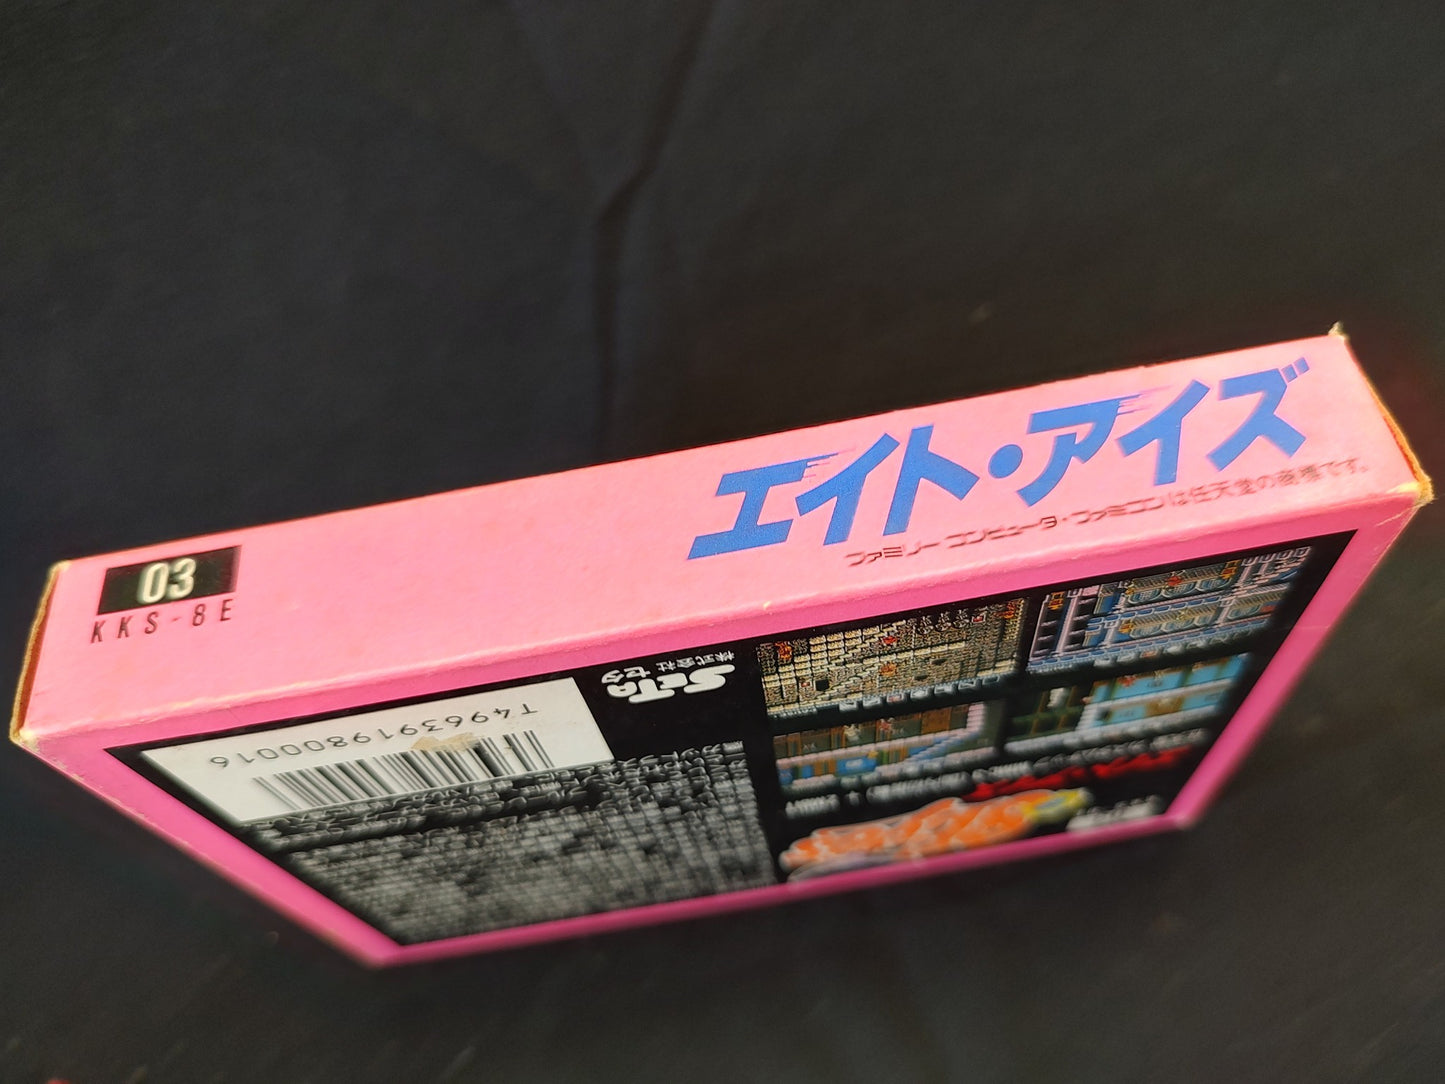 8 eyes ( Eight Eyes ) Nintendo Famicom NES Cartridge,Manual, Boxed set-f1204-